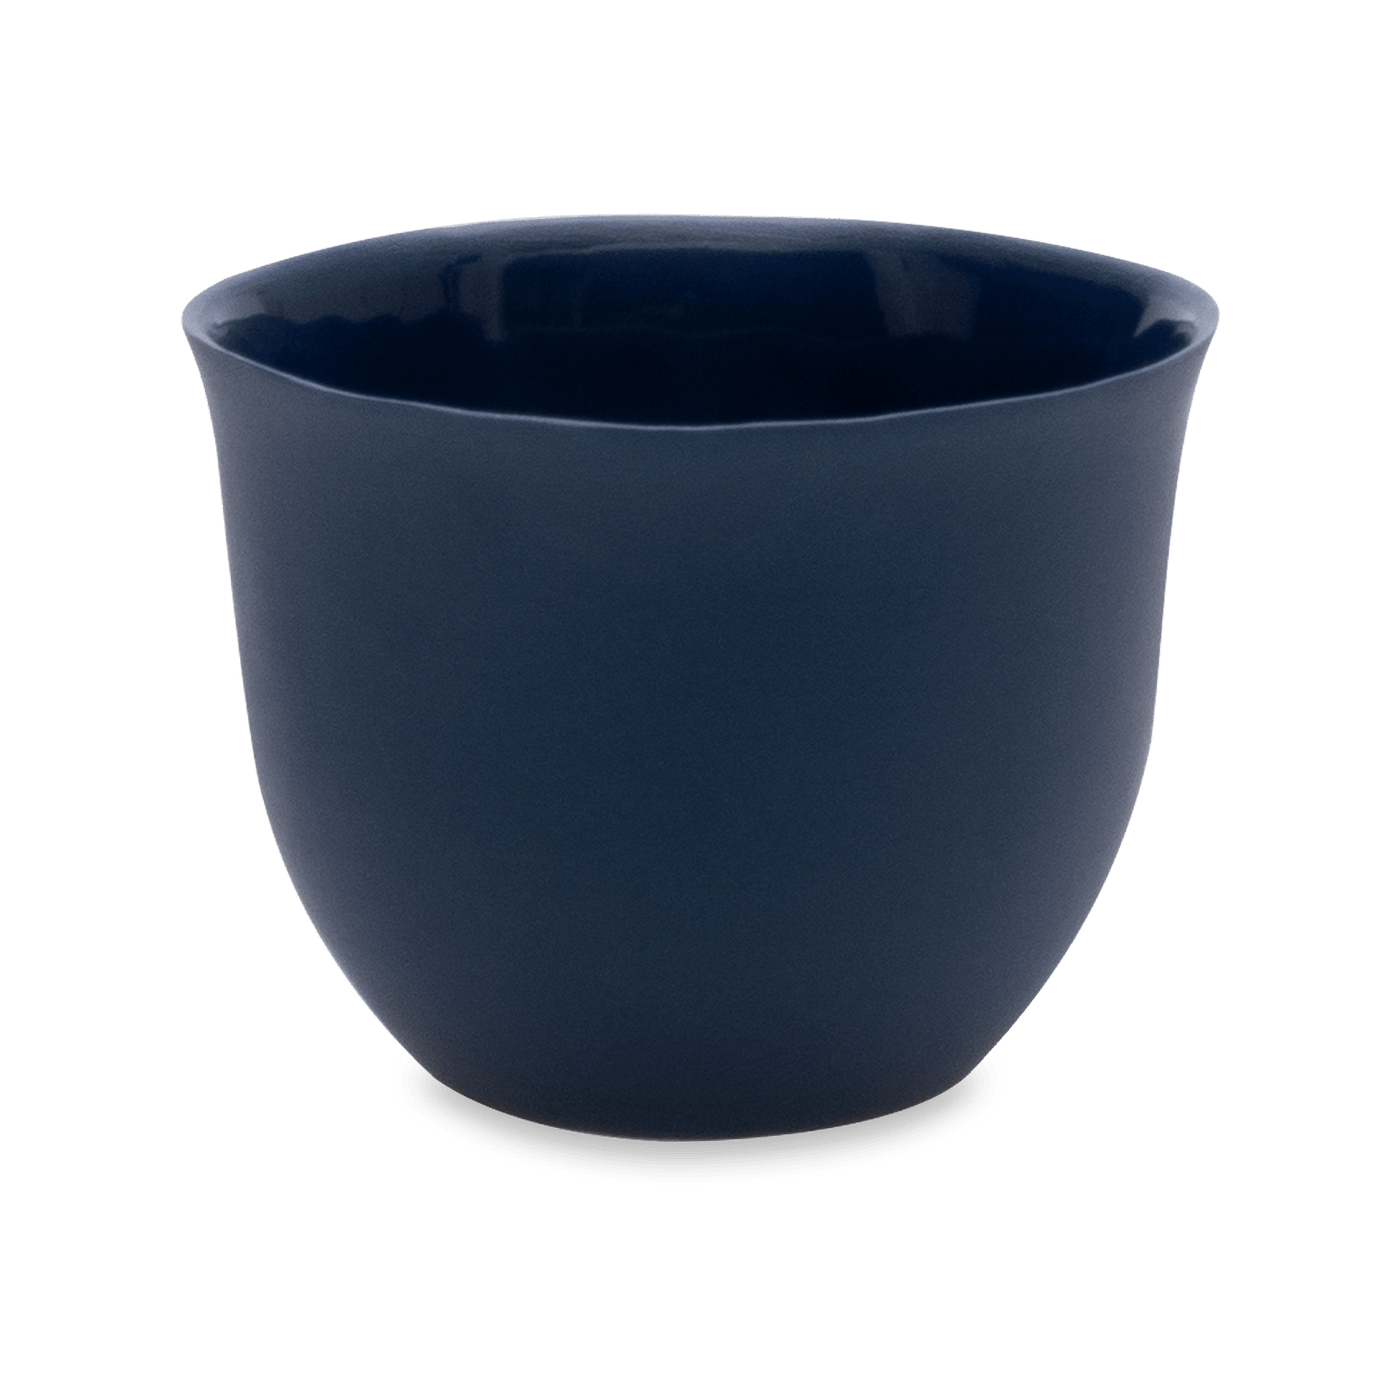 Handmade Nocturnal Espresso Cup, Navy, 90 ml Cups & Mugs sazy.com